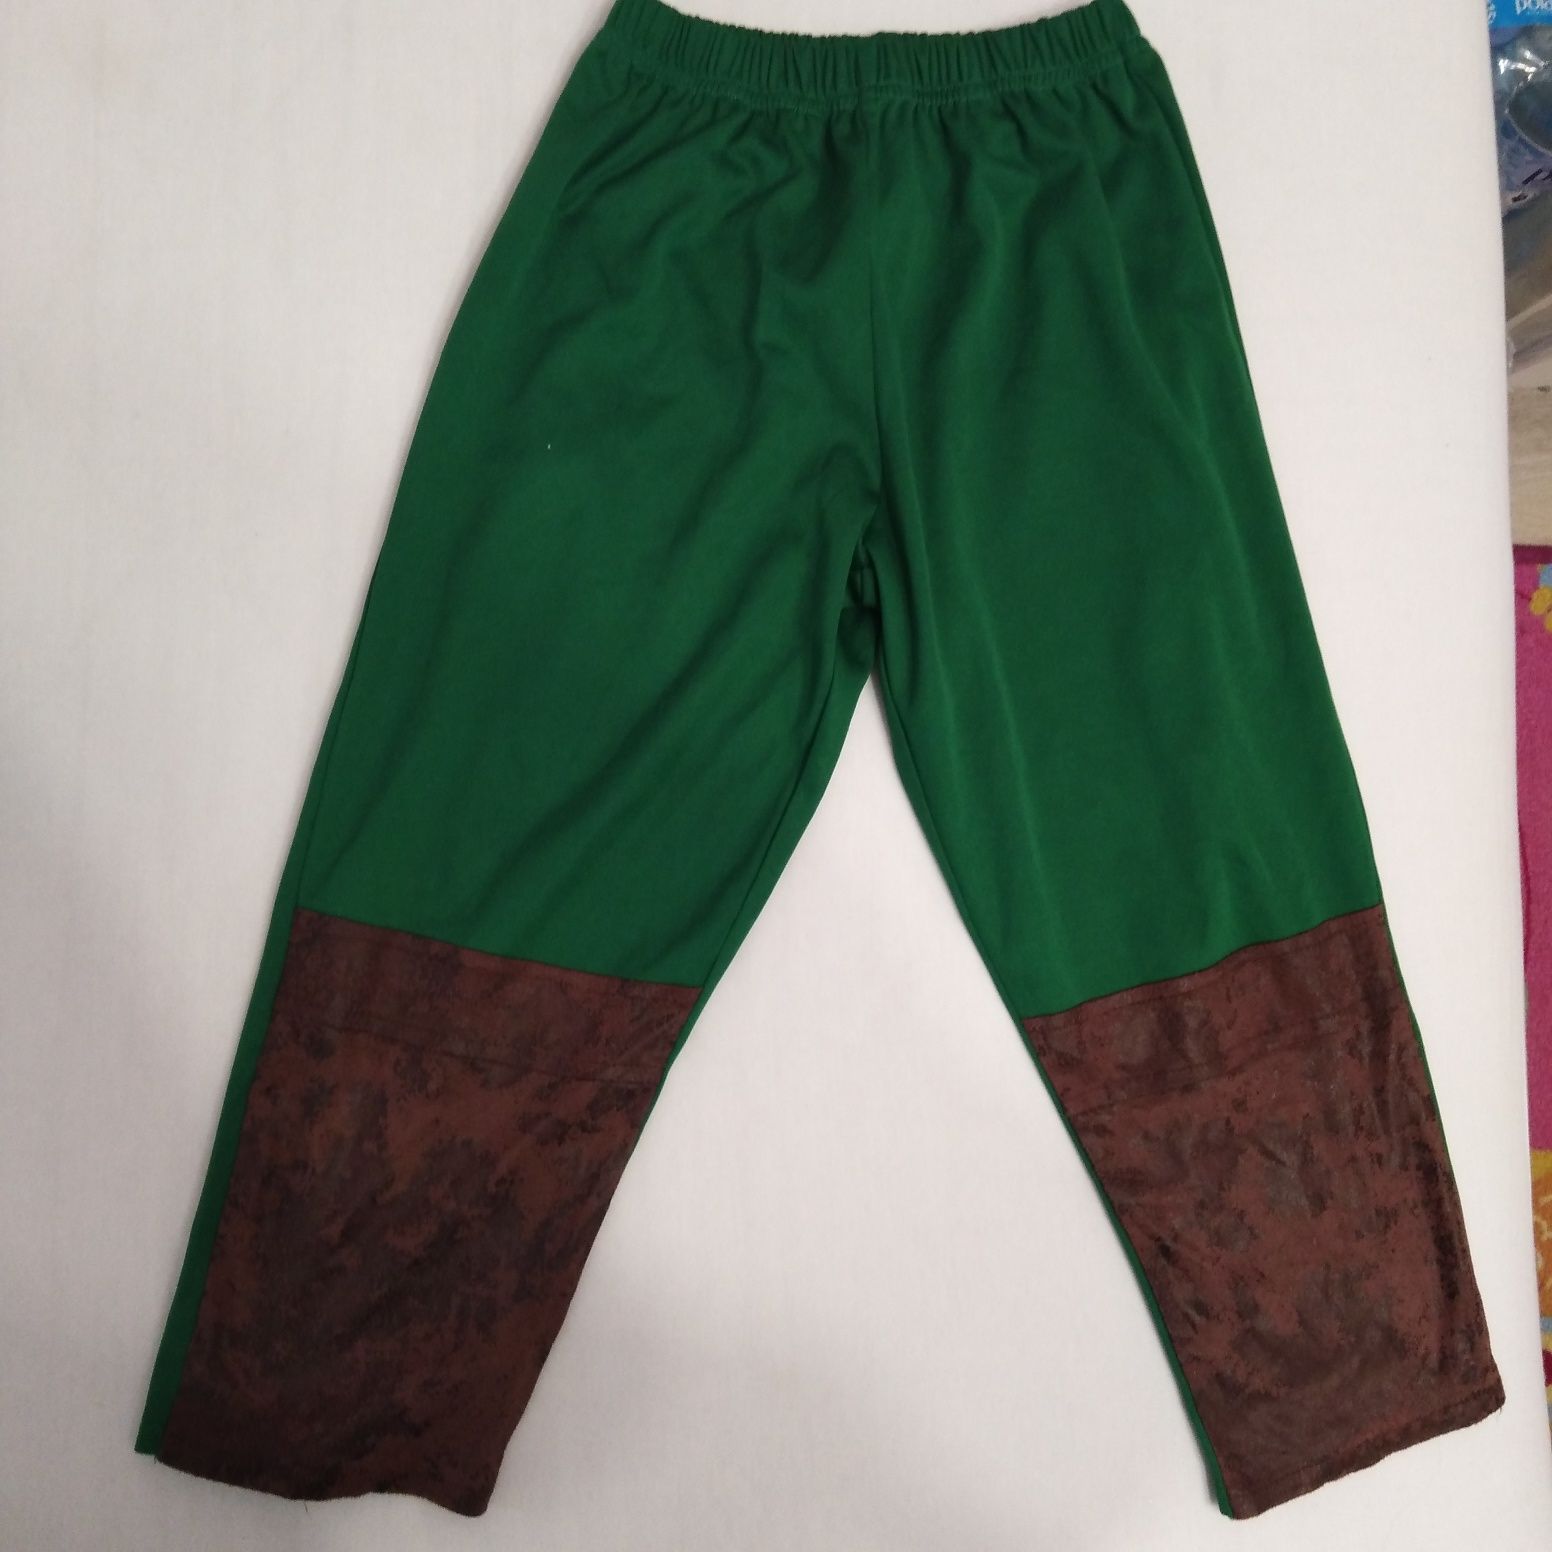 Spodnie zielone przebranie strój karnawałowy 3-4 lata